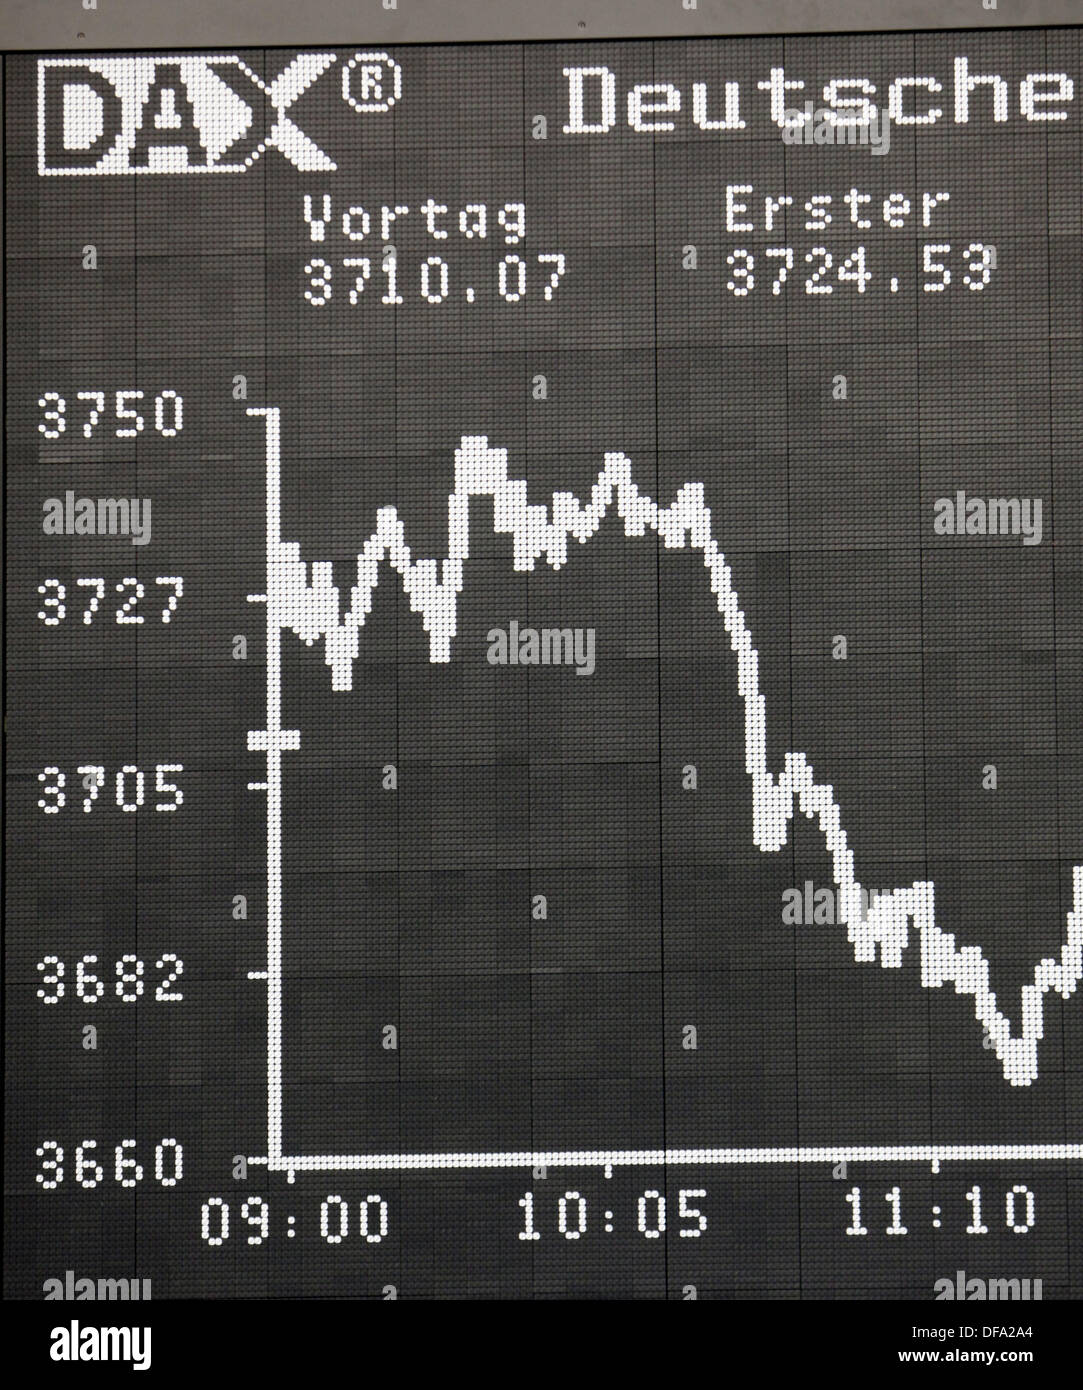 Bild von der Aktienindex DAX (deutscher Aktienindex) mit seinem niedrigen Niveau am 3. März 2009 in Frankfurt Am Main. Stockfoto